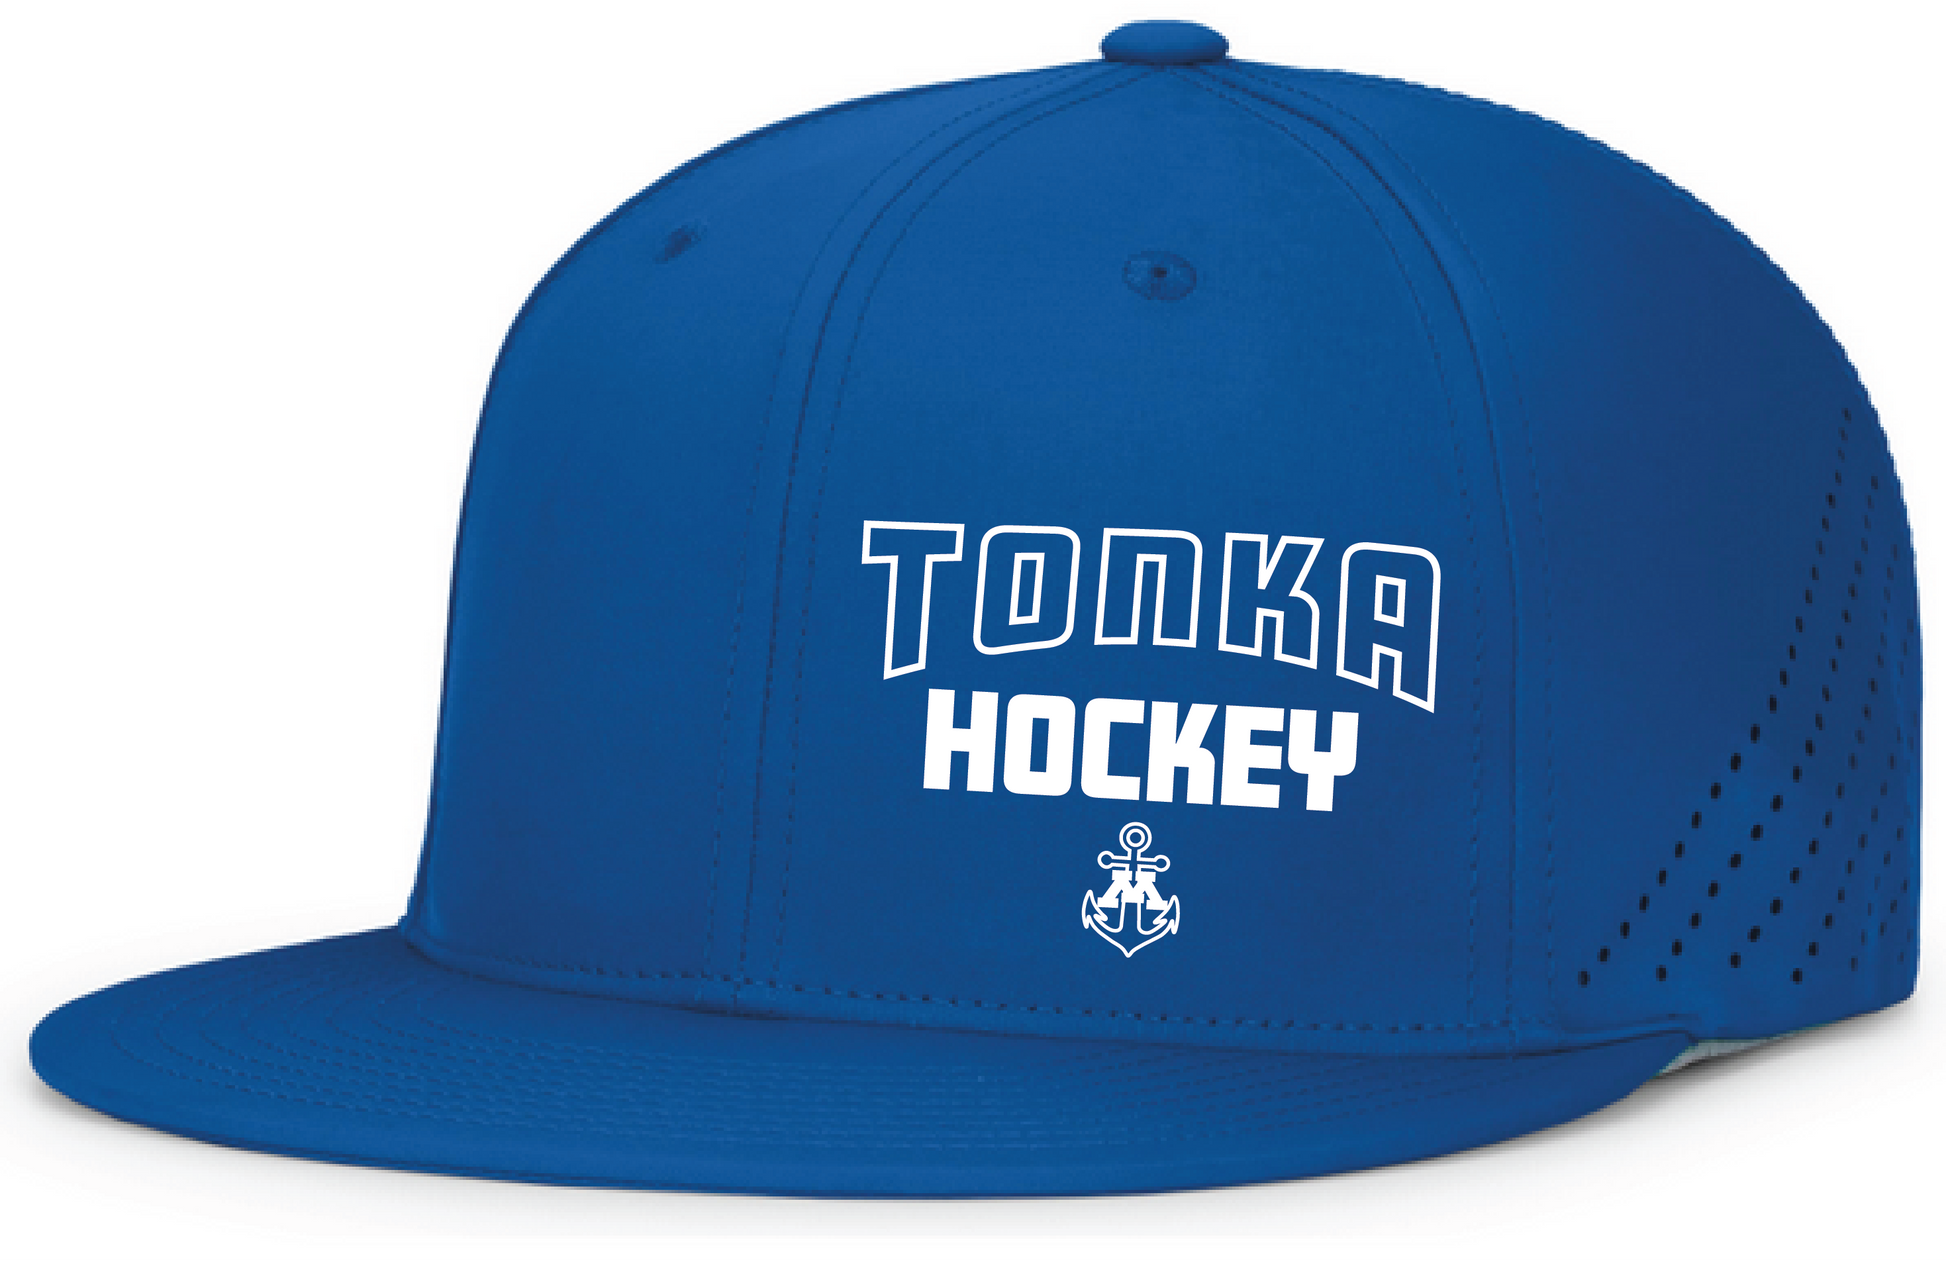 Tonka Hockey Small Anchor Royal